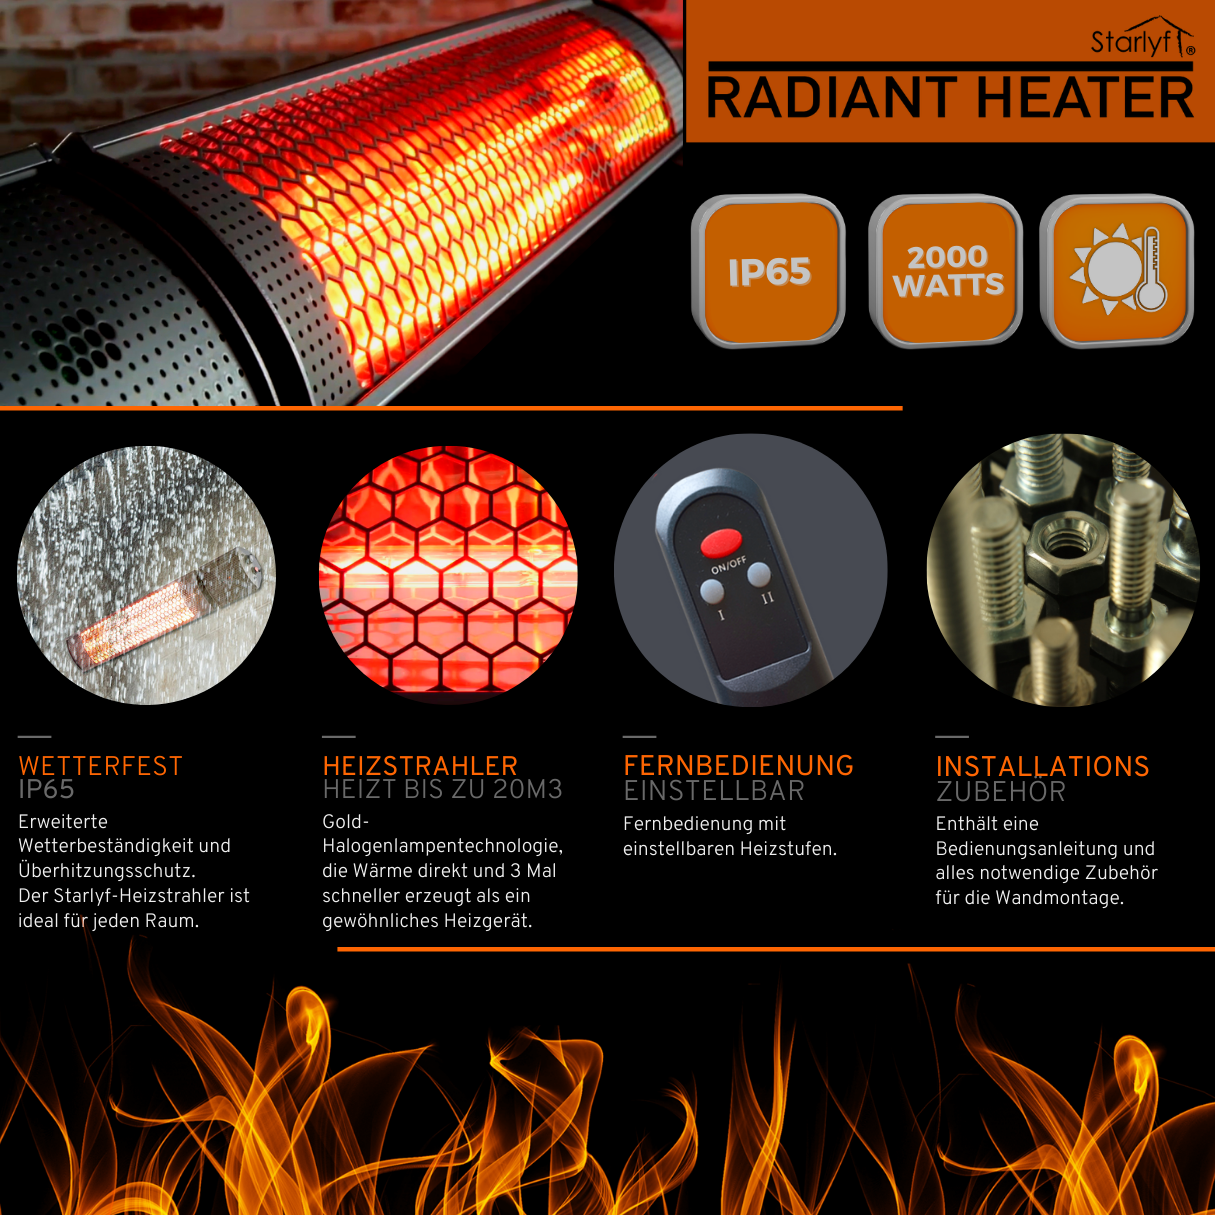 STARLYF Radiant Heater Heizstrahler Raumgröße: Watt, (2000 m³) 20